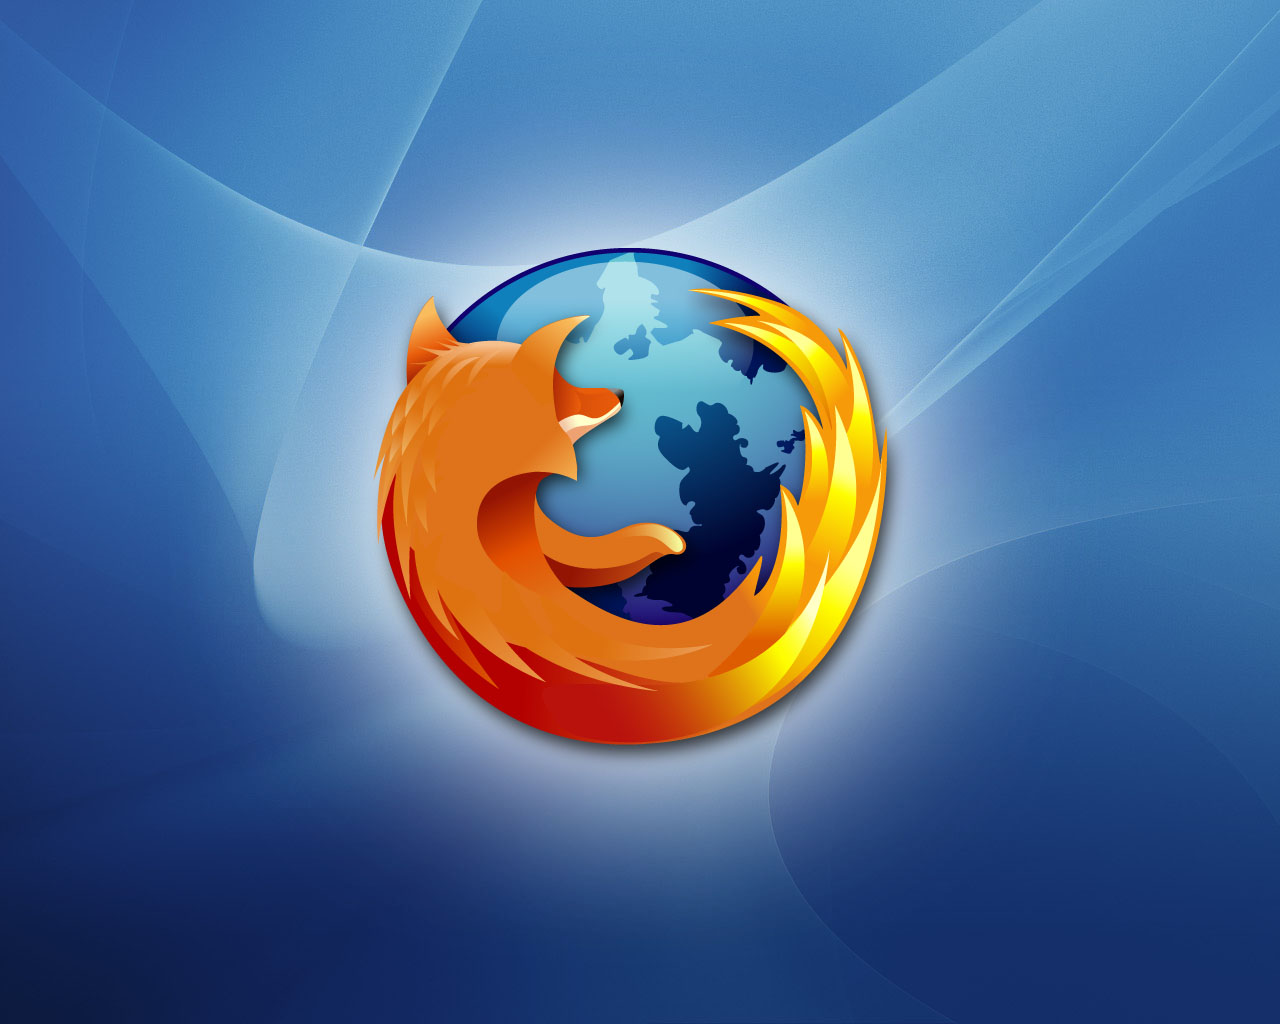 Firefox_02_1280x1024.jpg